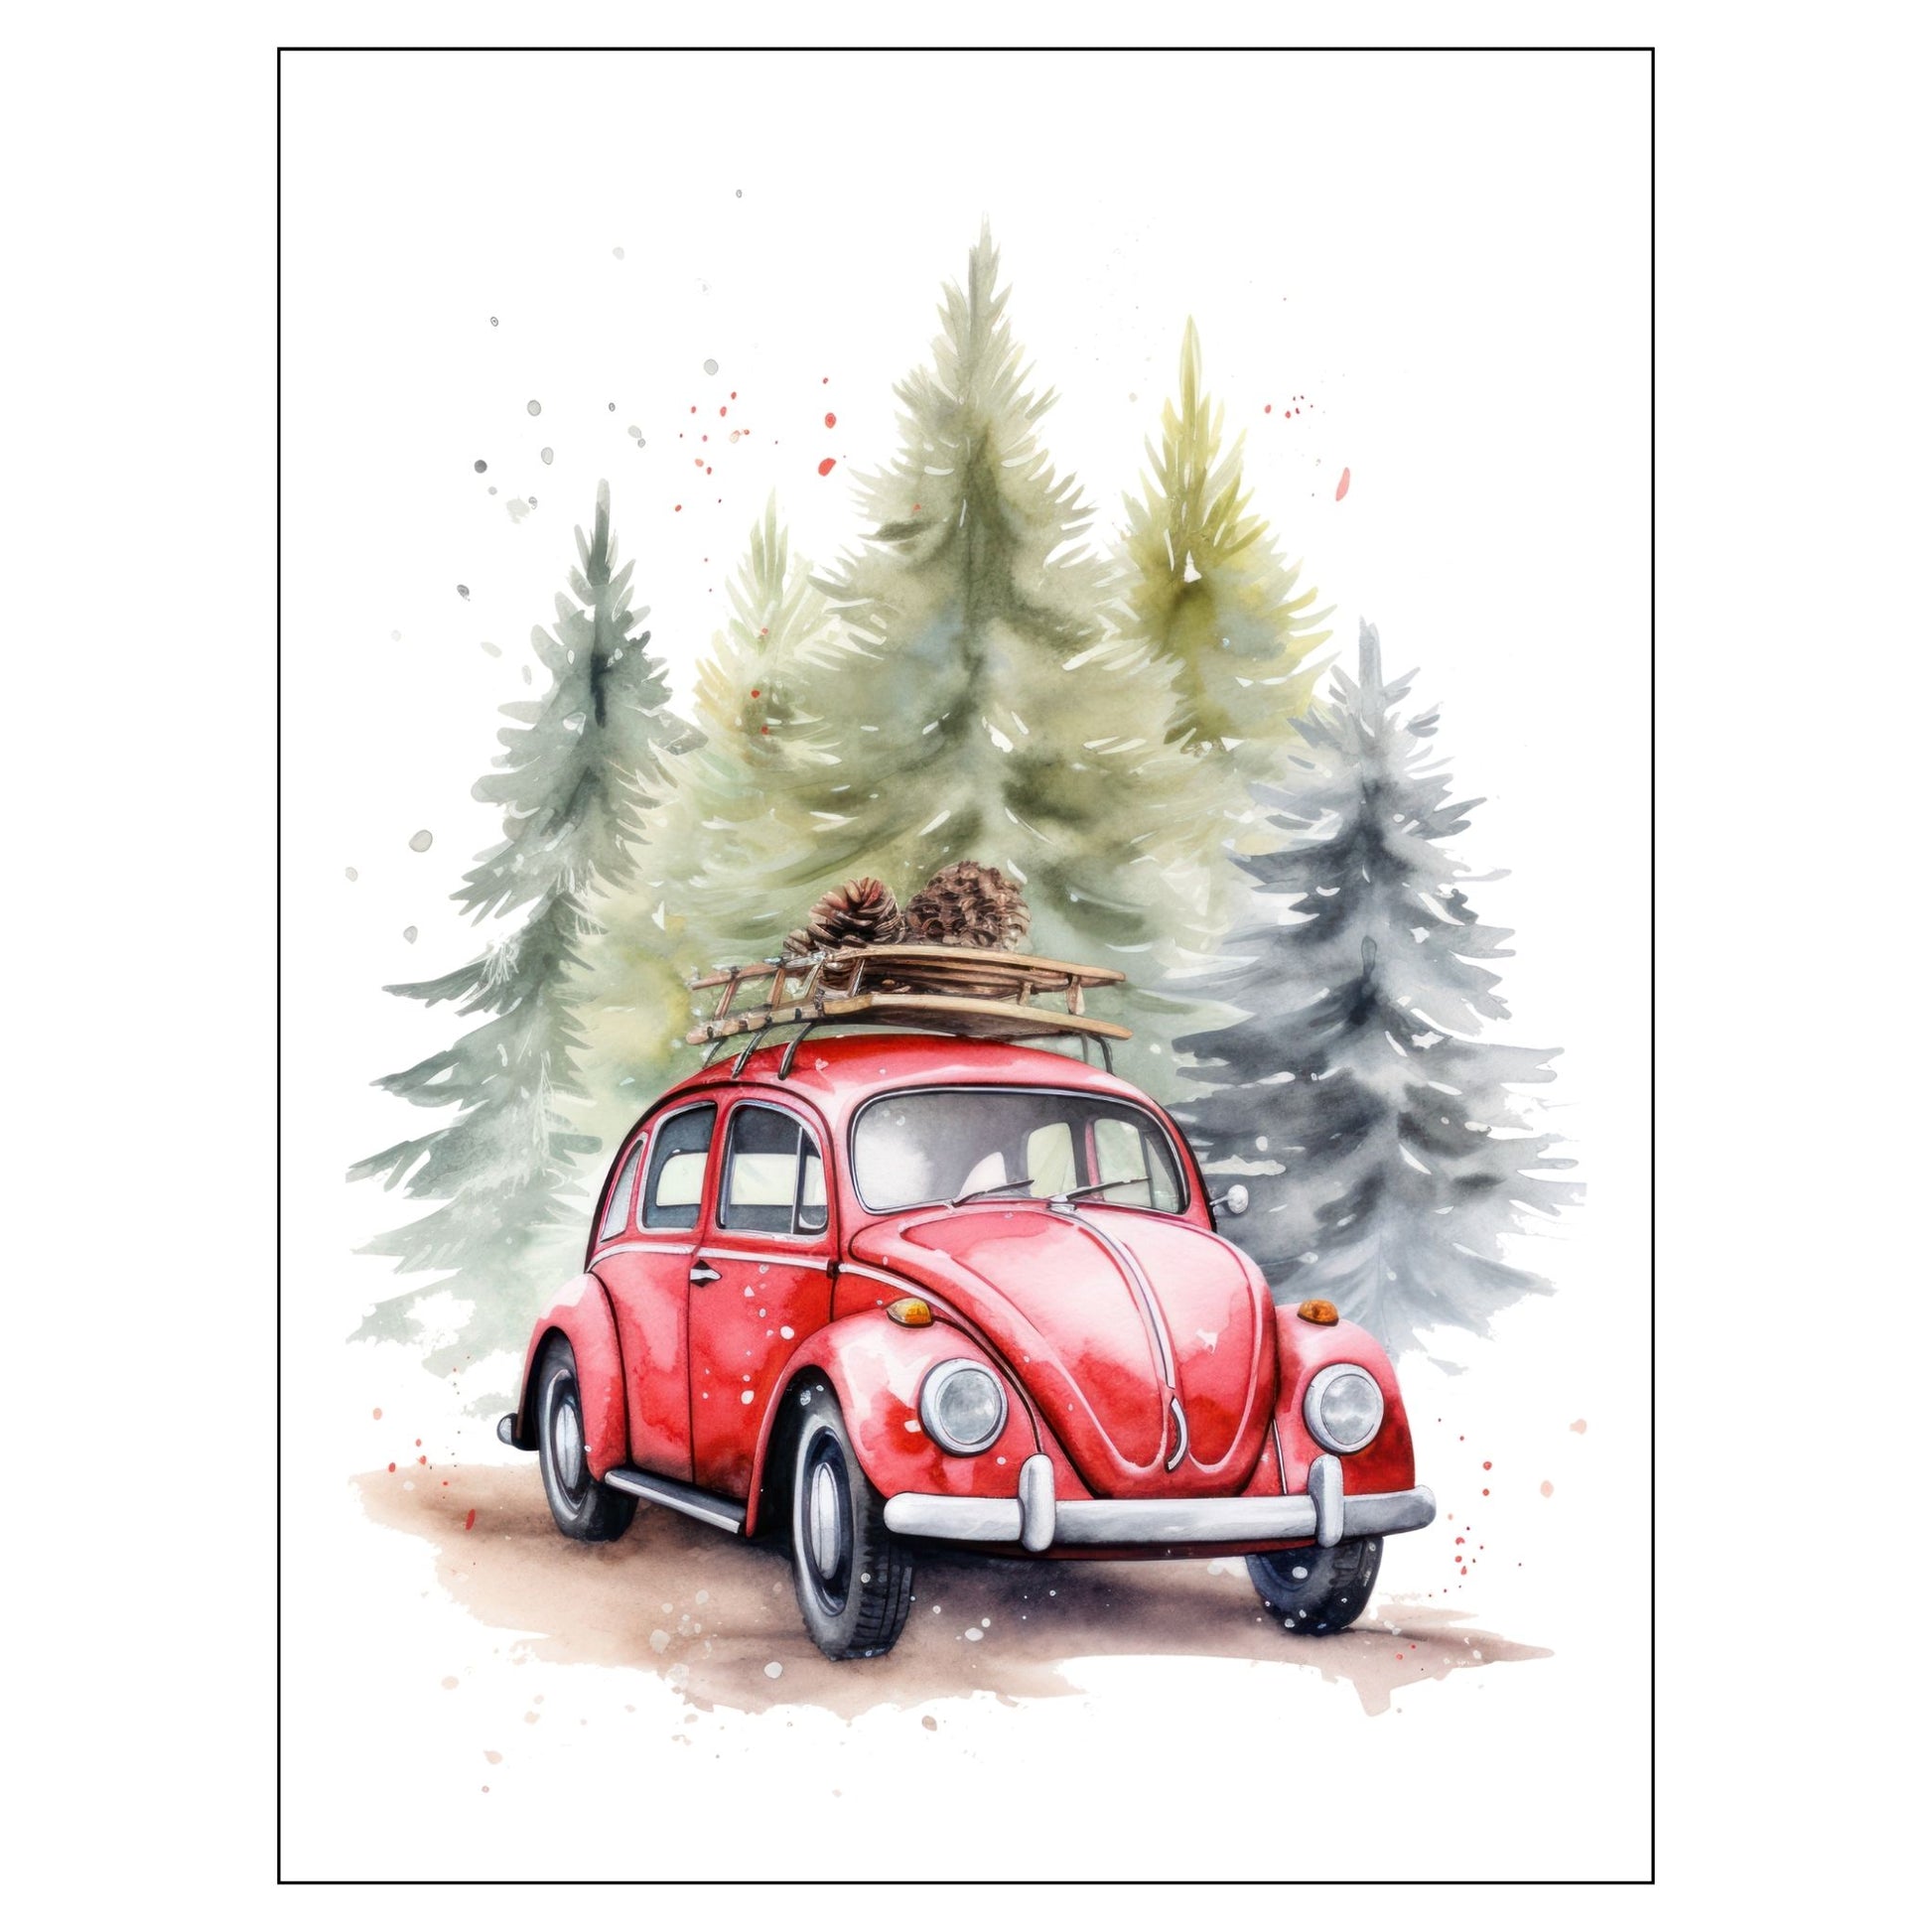 Grafisk julemotiv av gammel, rød volkswagen boble. Bilen kjører i en skog, og på taket er den lastet med furukongler. Motivet trykkes på plakat og lerret. 